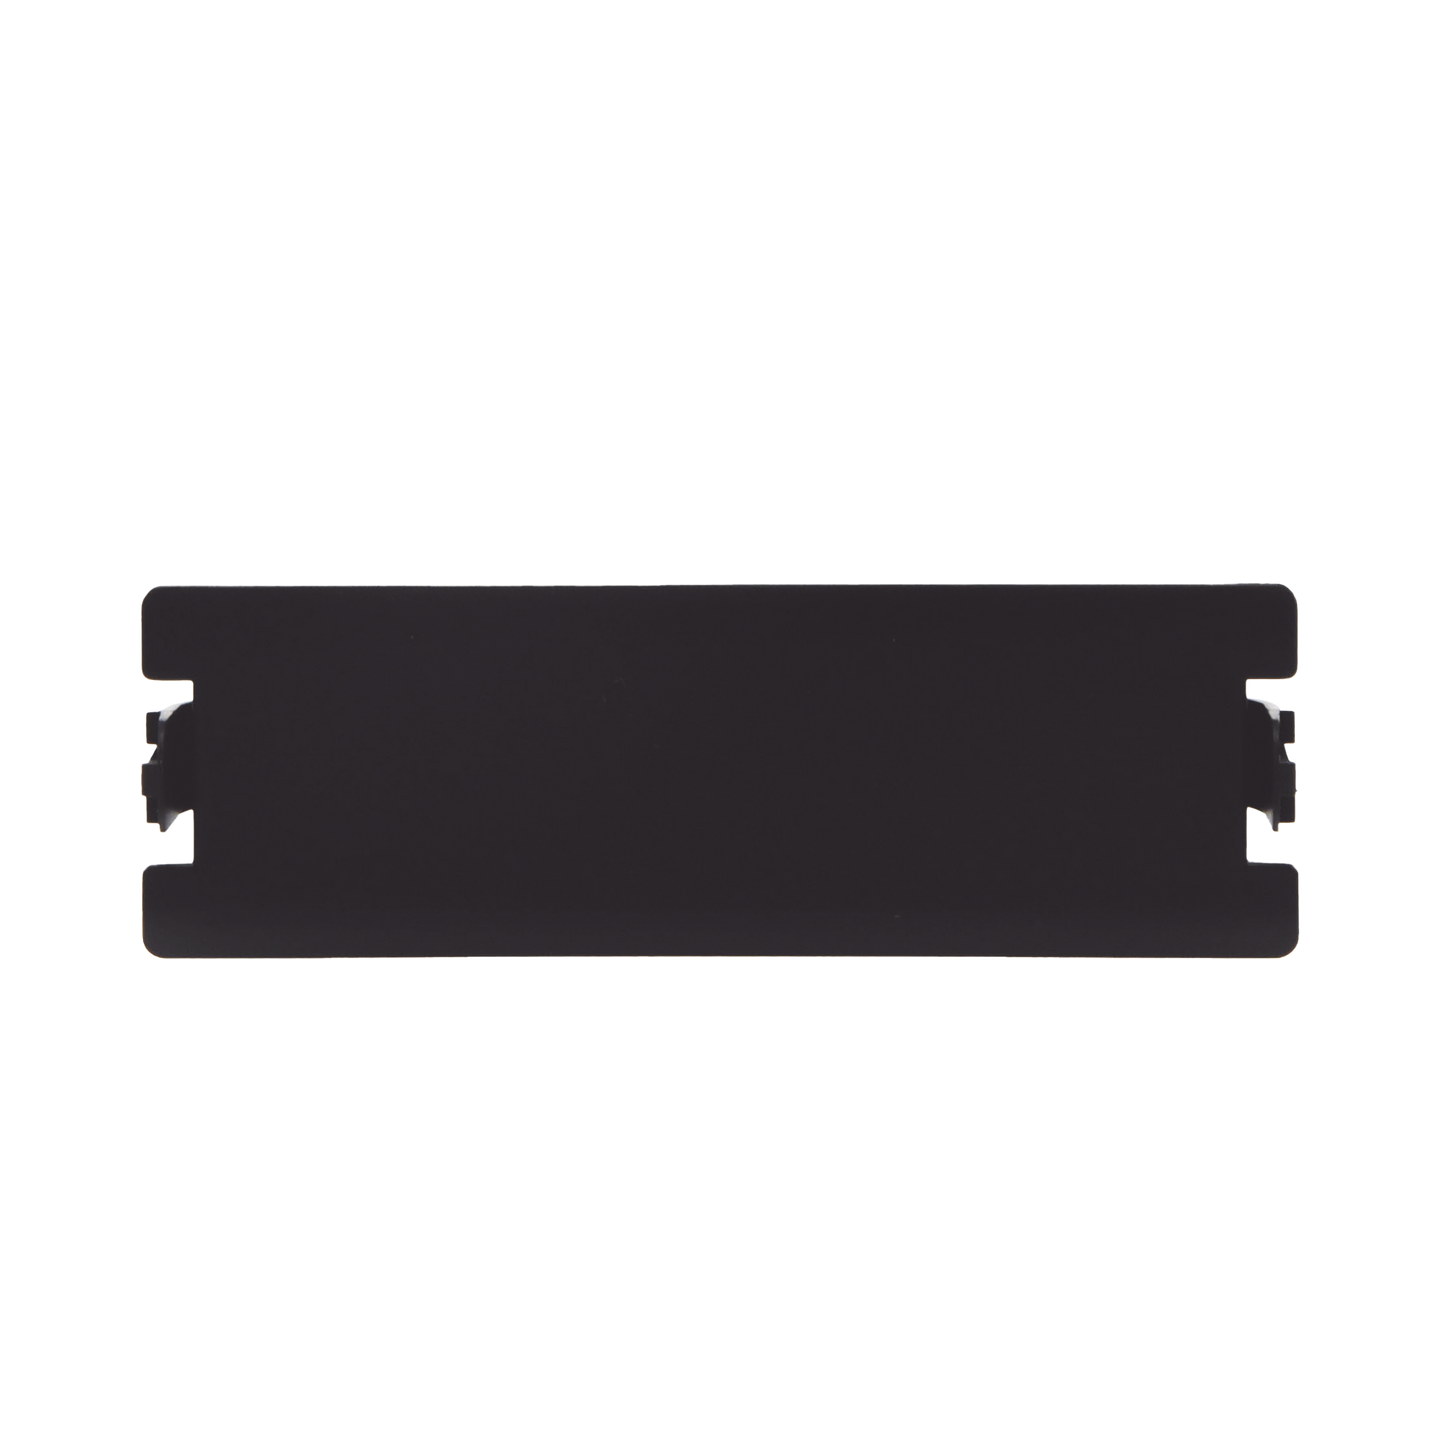 Placa ciega color negro para Distribuidor de Fibra Óptica LP-ODF-8024